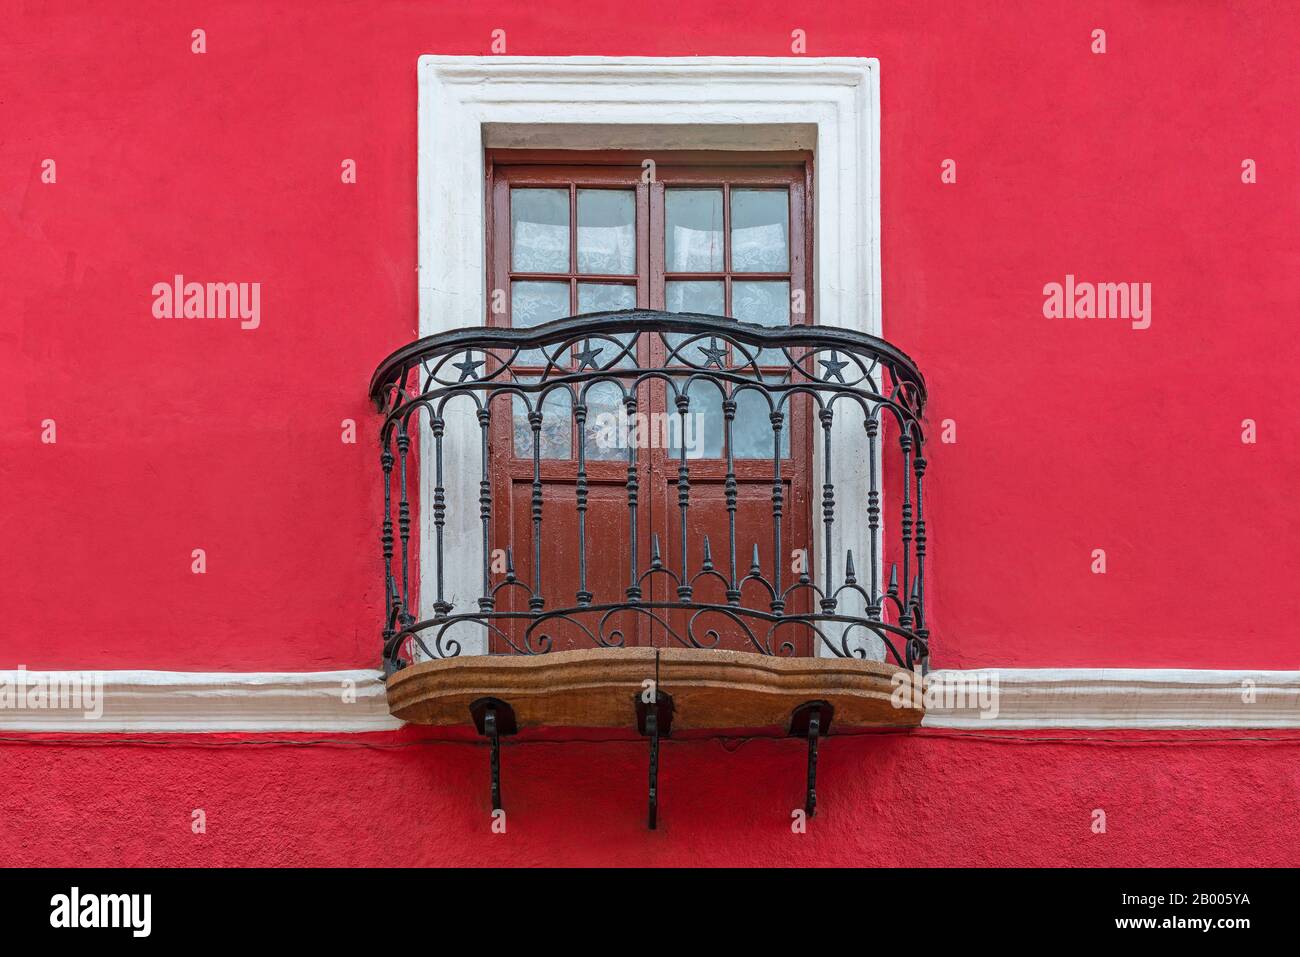 Balcon de style colonial avec fenêtre en bois, décorations en fer forgé et façade rouge, Potosi, Bolivie. Banque D'Images